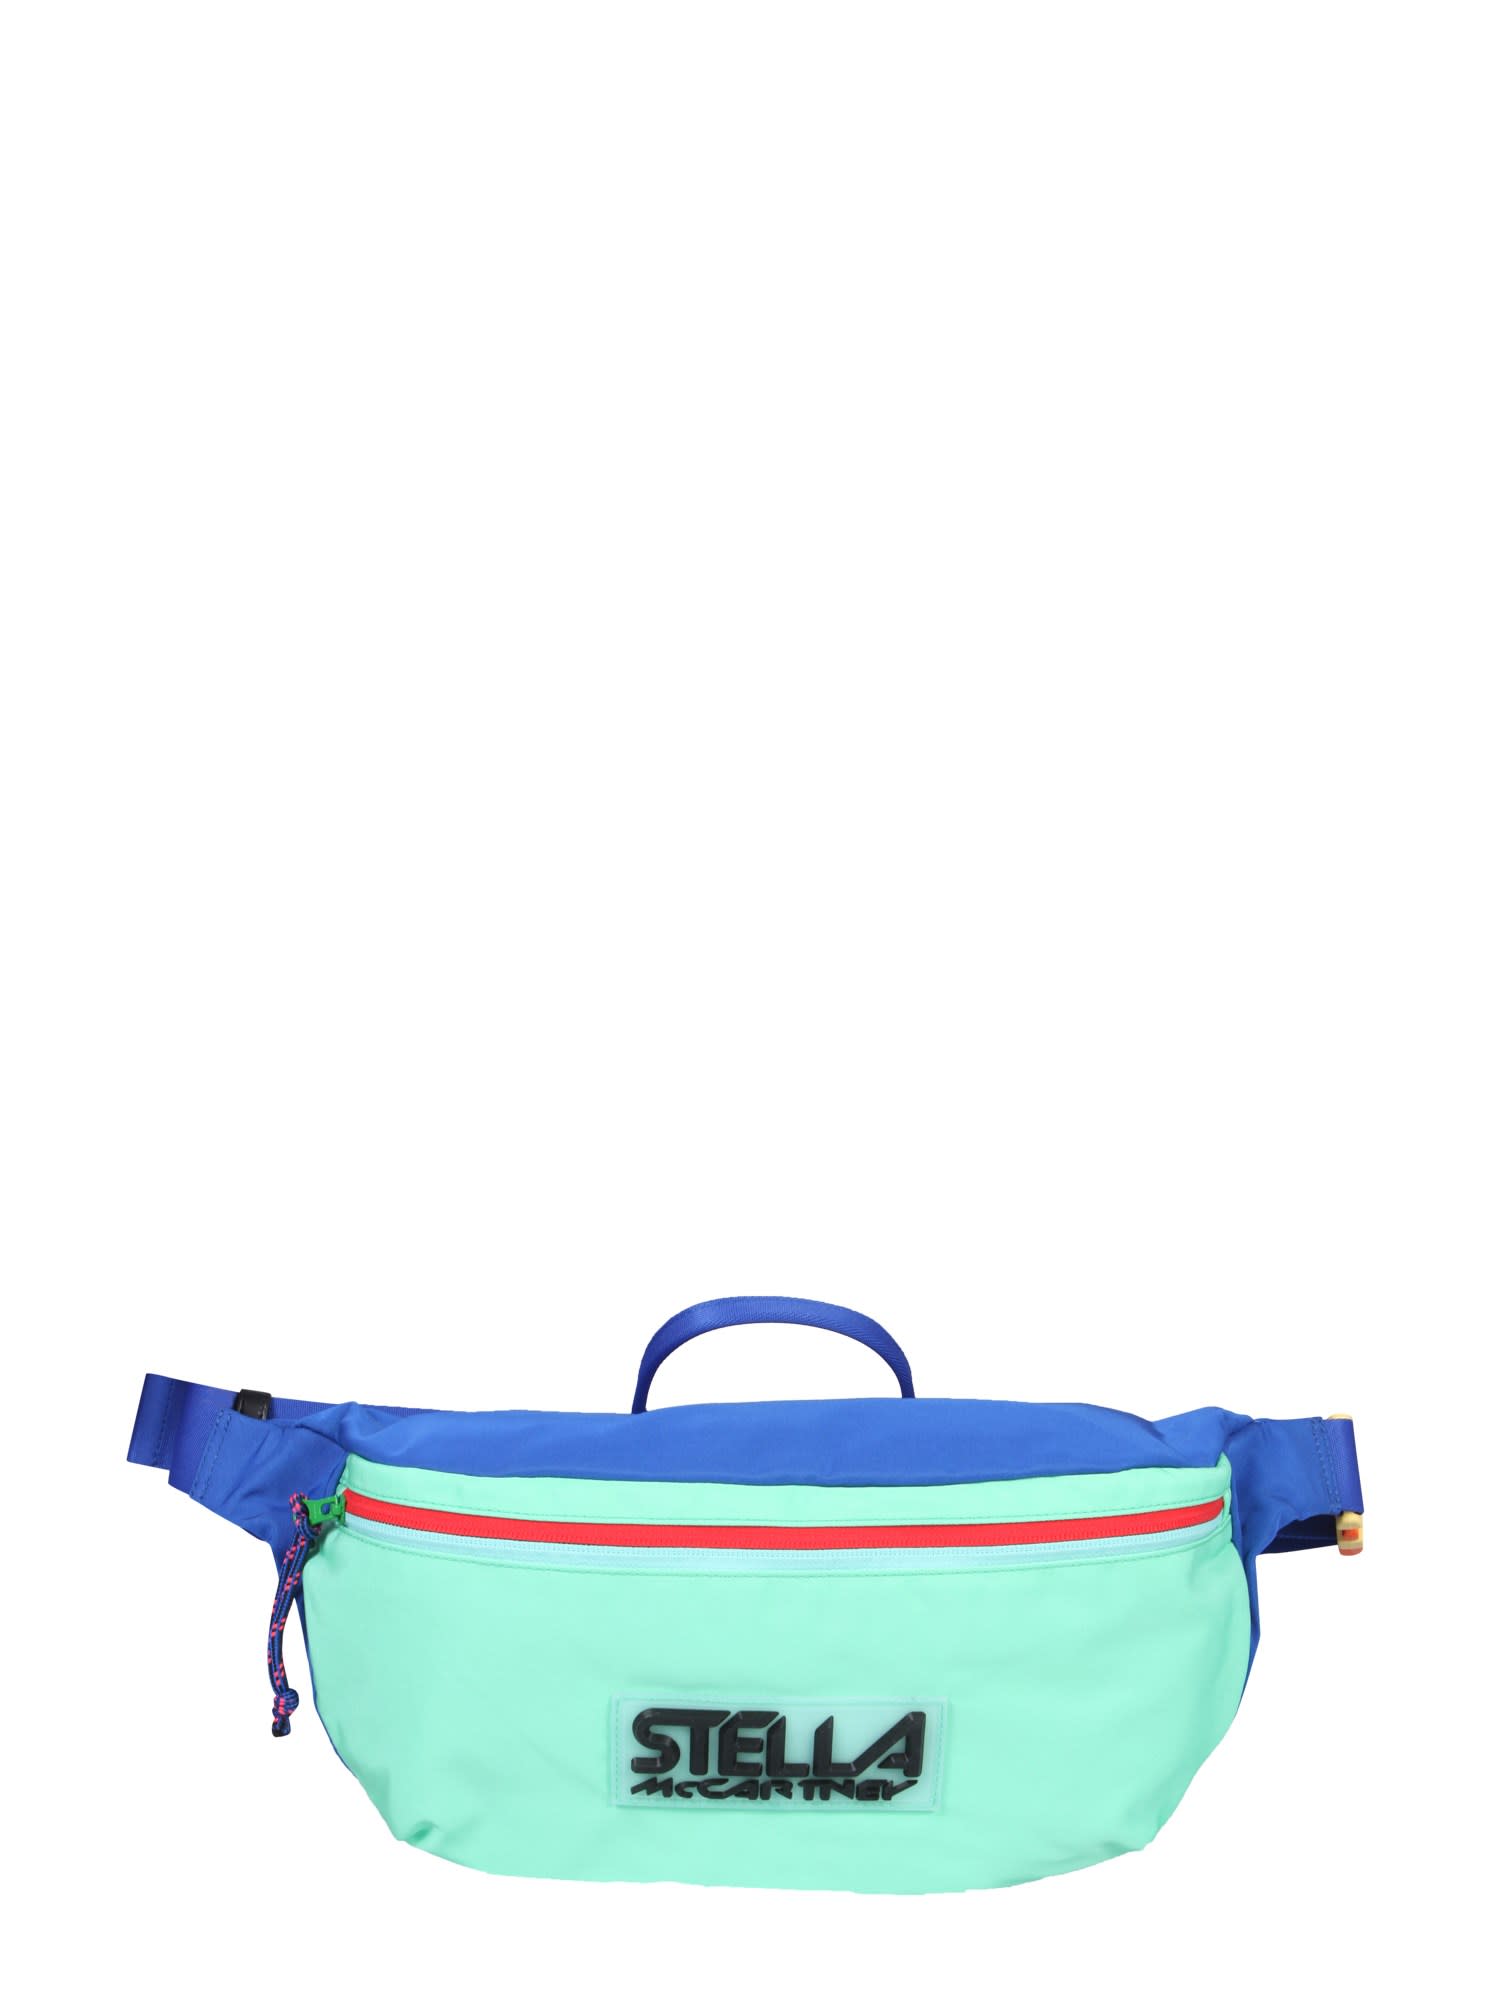 STELLA MCCARTNEY Belt Bags for Women | ModeSens